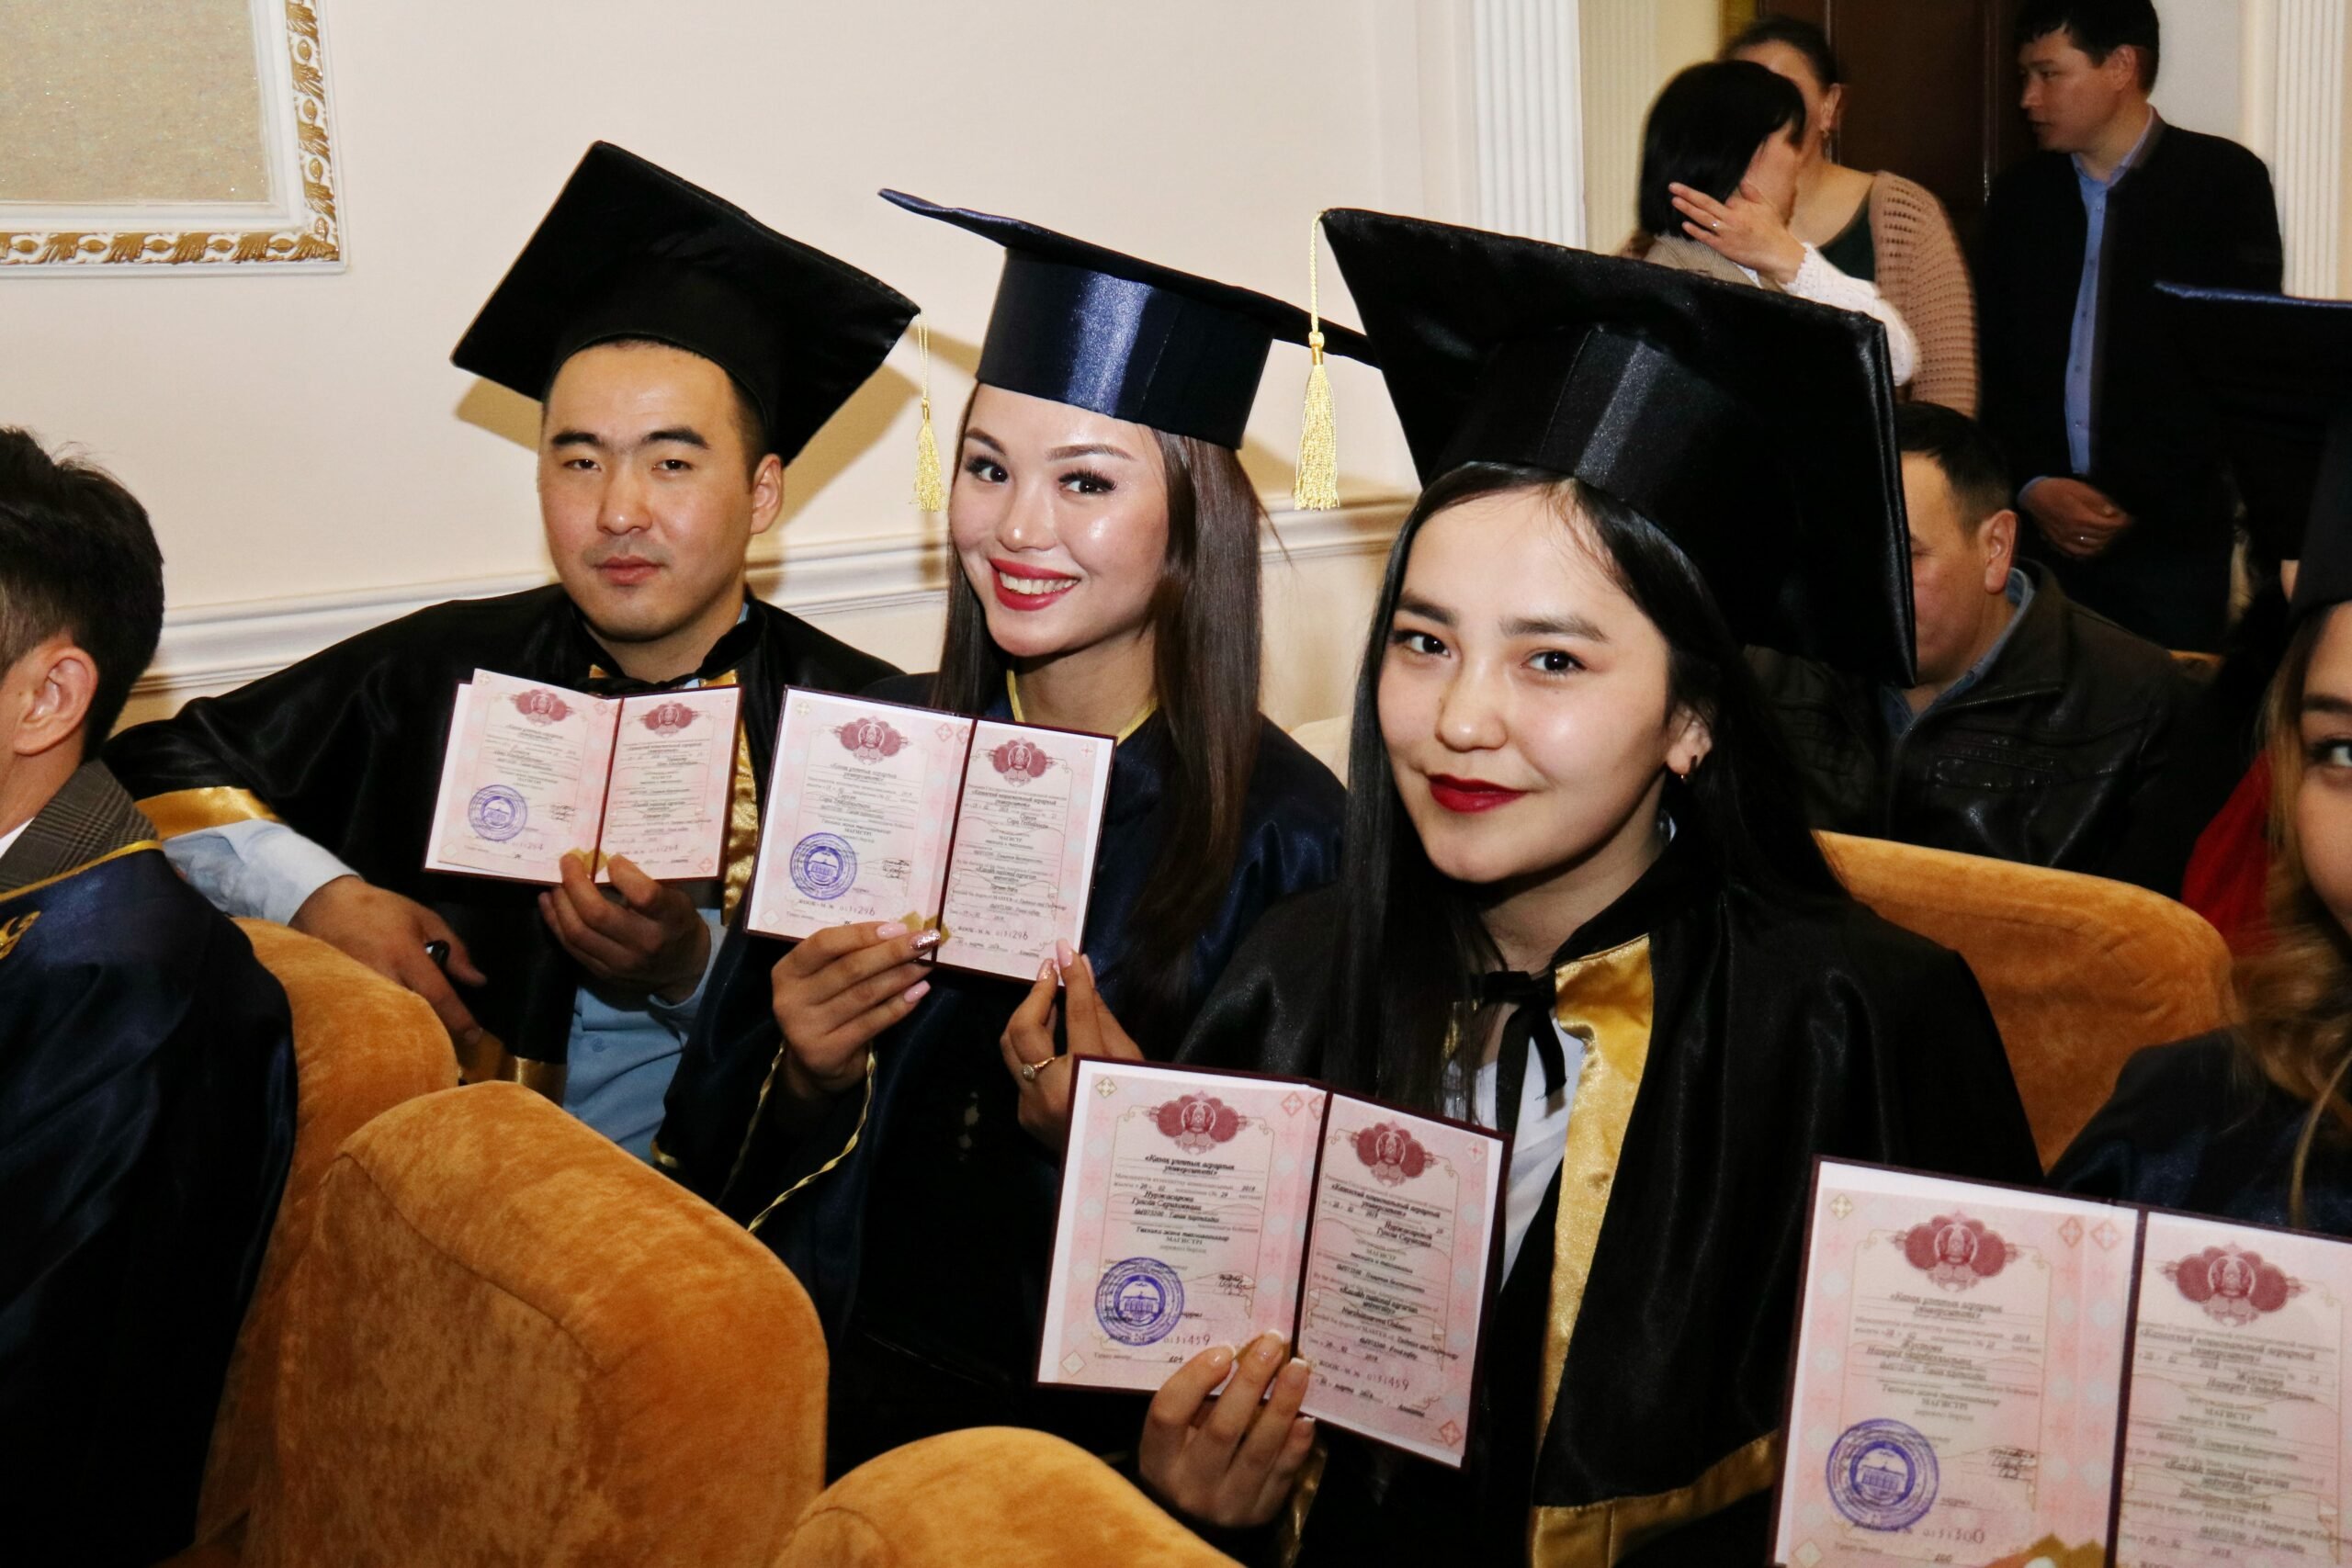 заказать диплом специалиста https://diplom-kz.com/diplom-specialista-kazakhstan